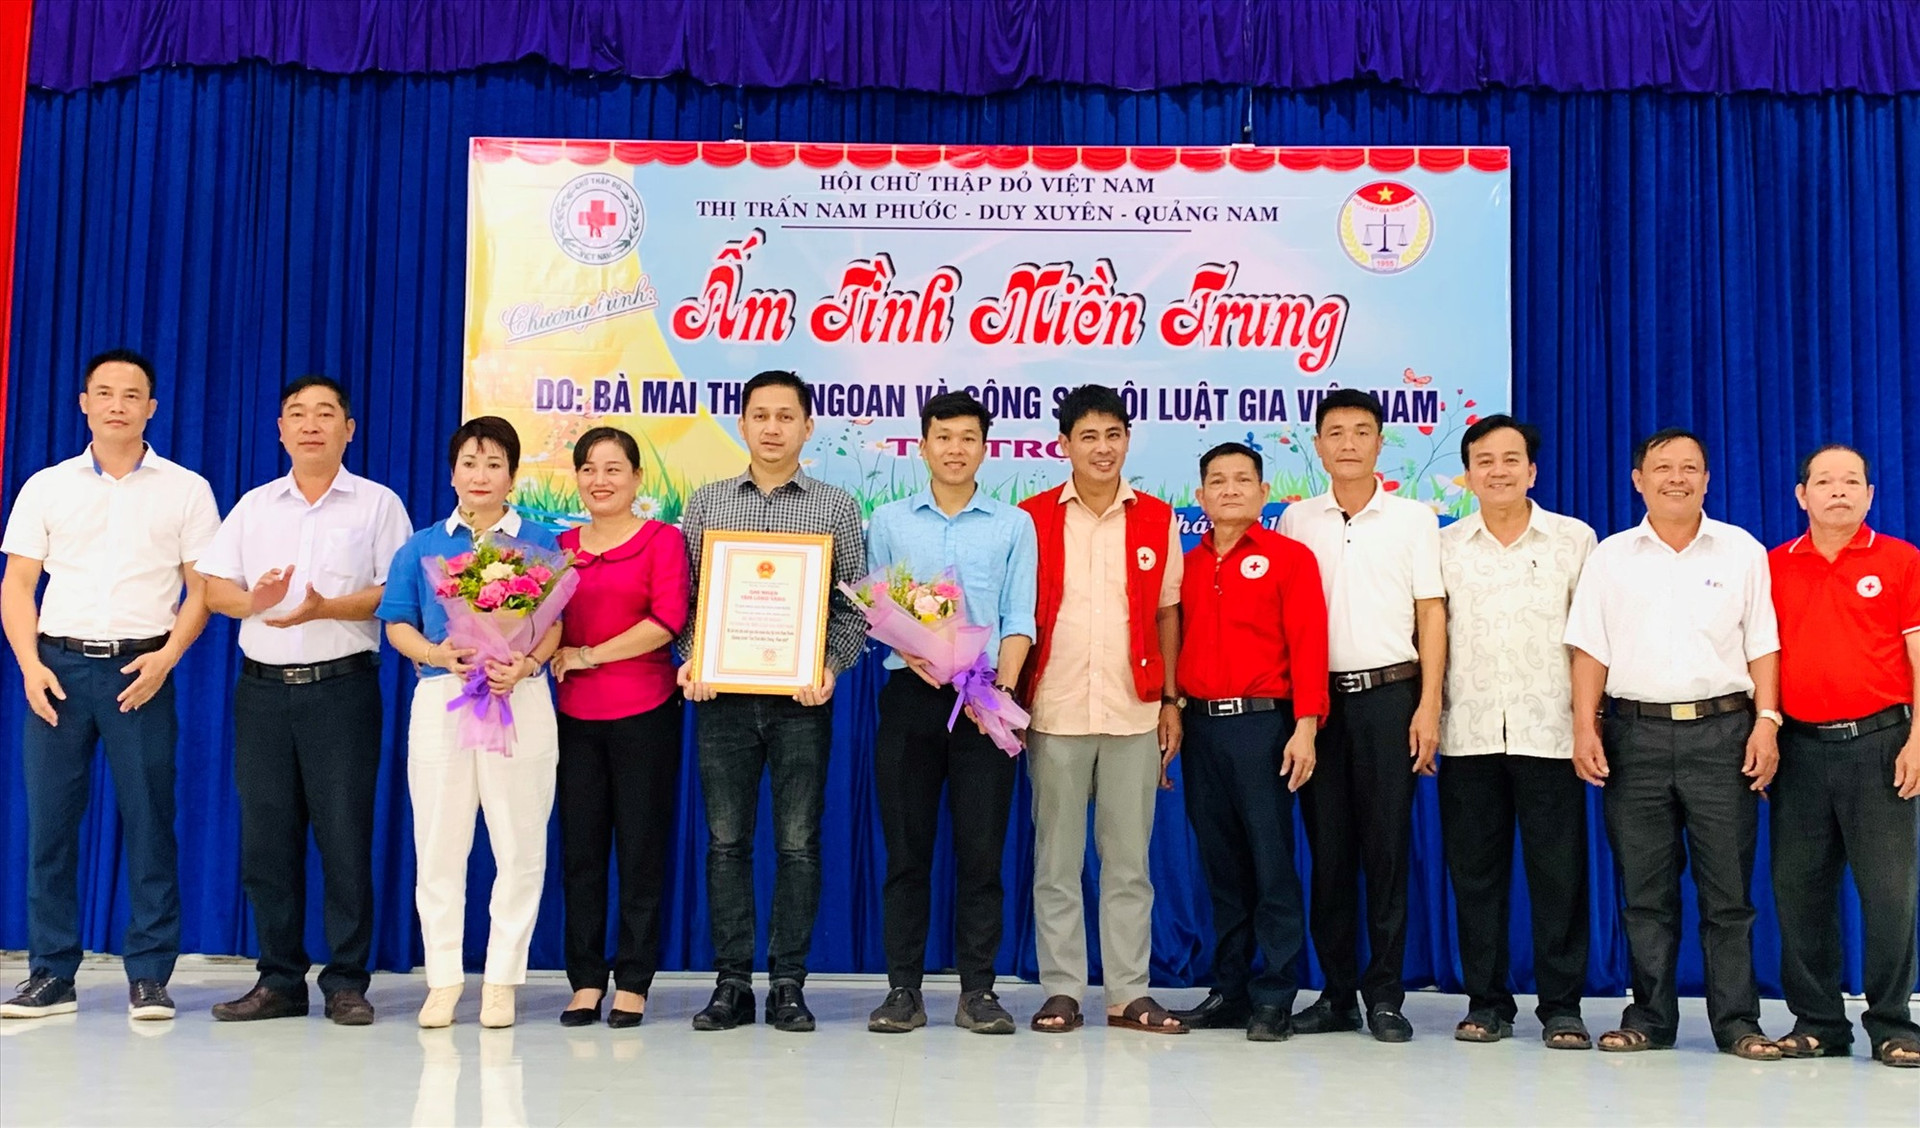 Đại diện UBND thị trấn Nam Phước trao bảng ghi nhận tấm lòng vàng cho bà Mai Thị Tố Ngoan.            Ảnh: T.N